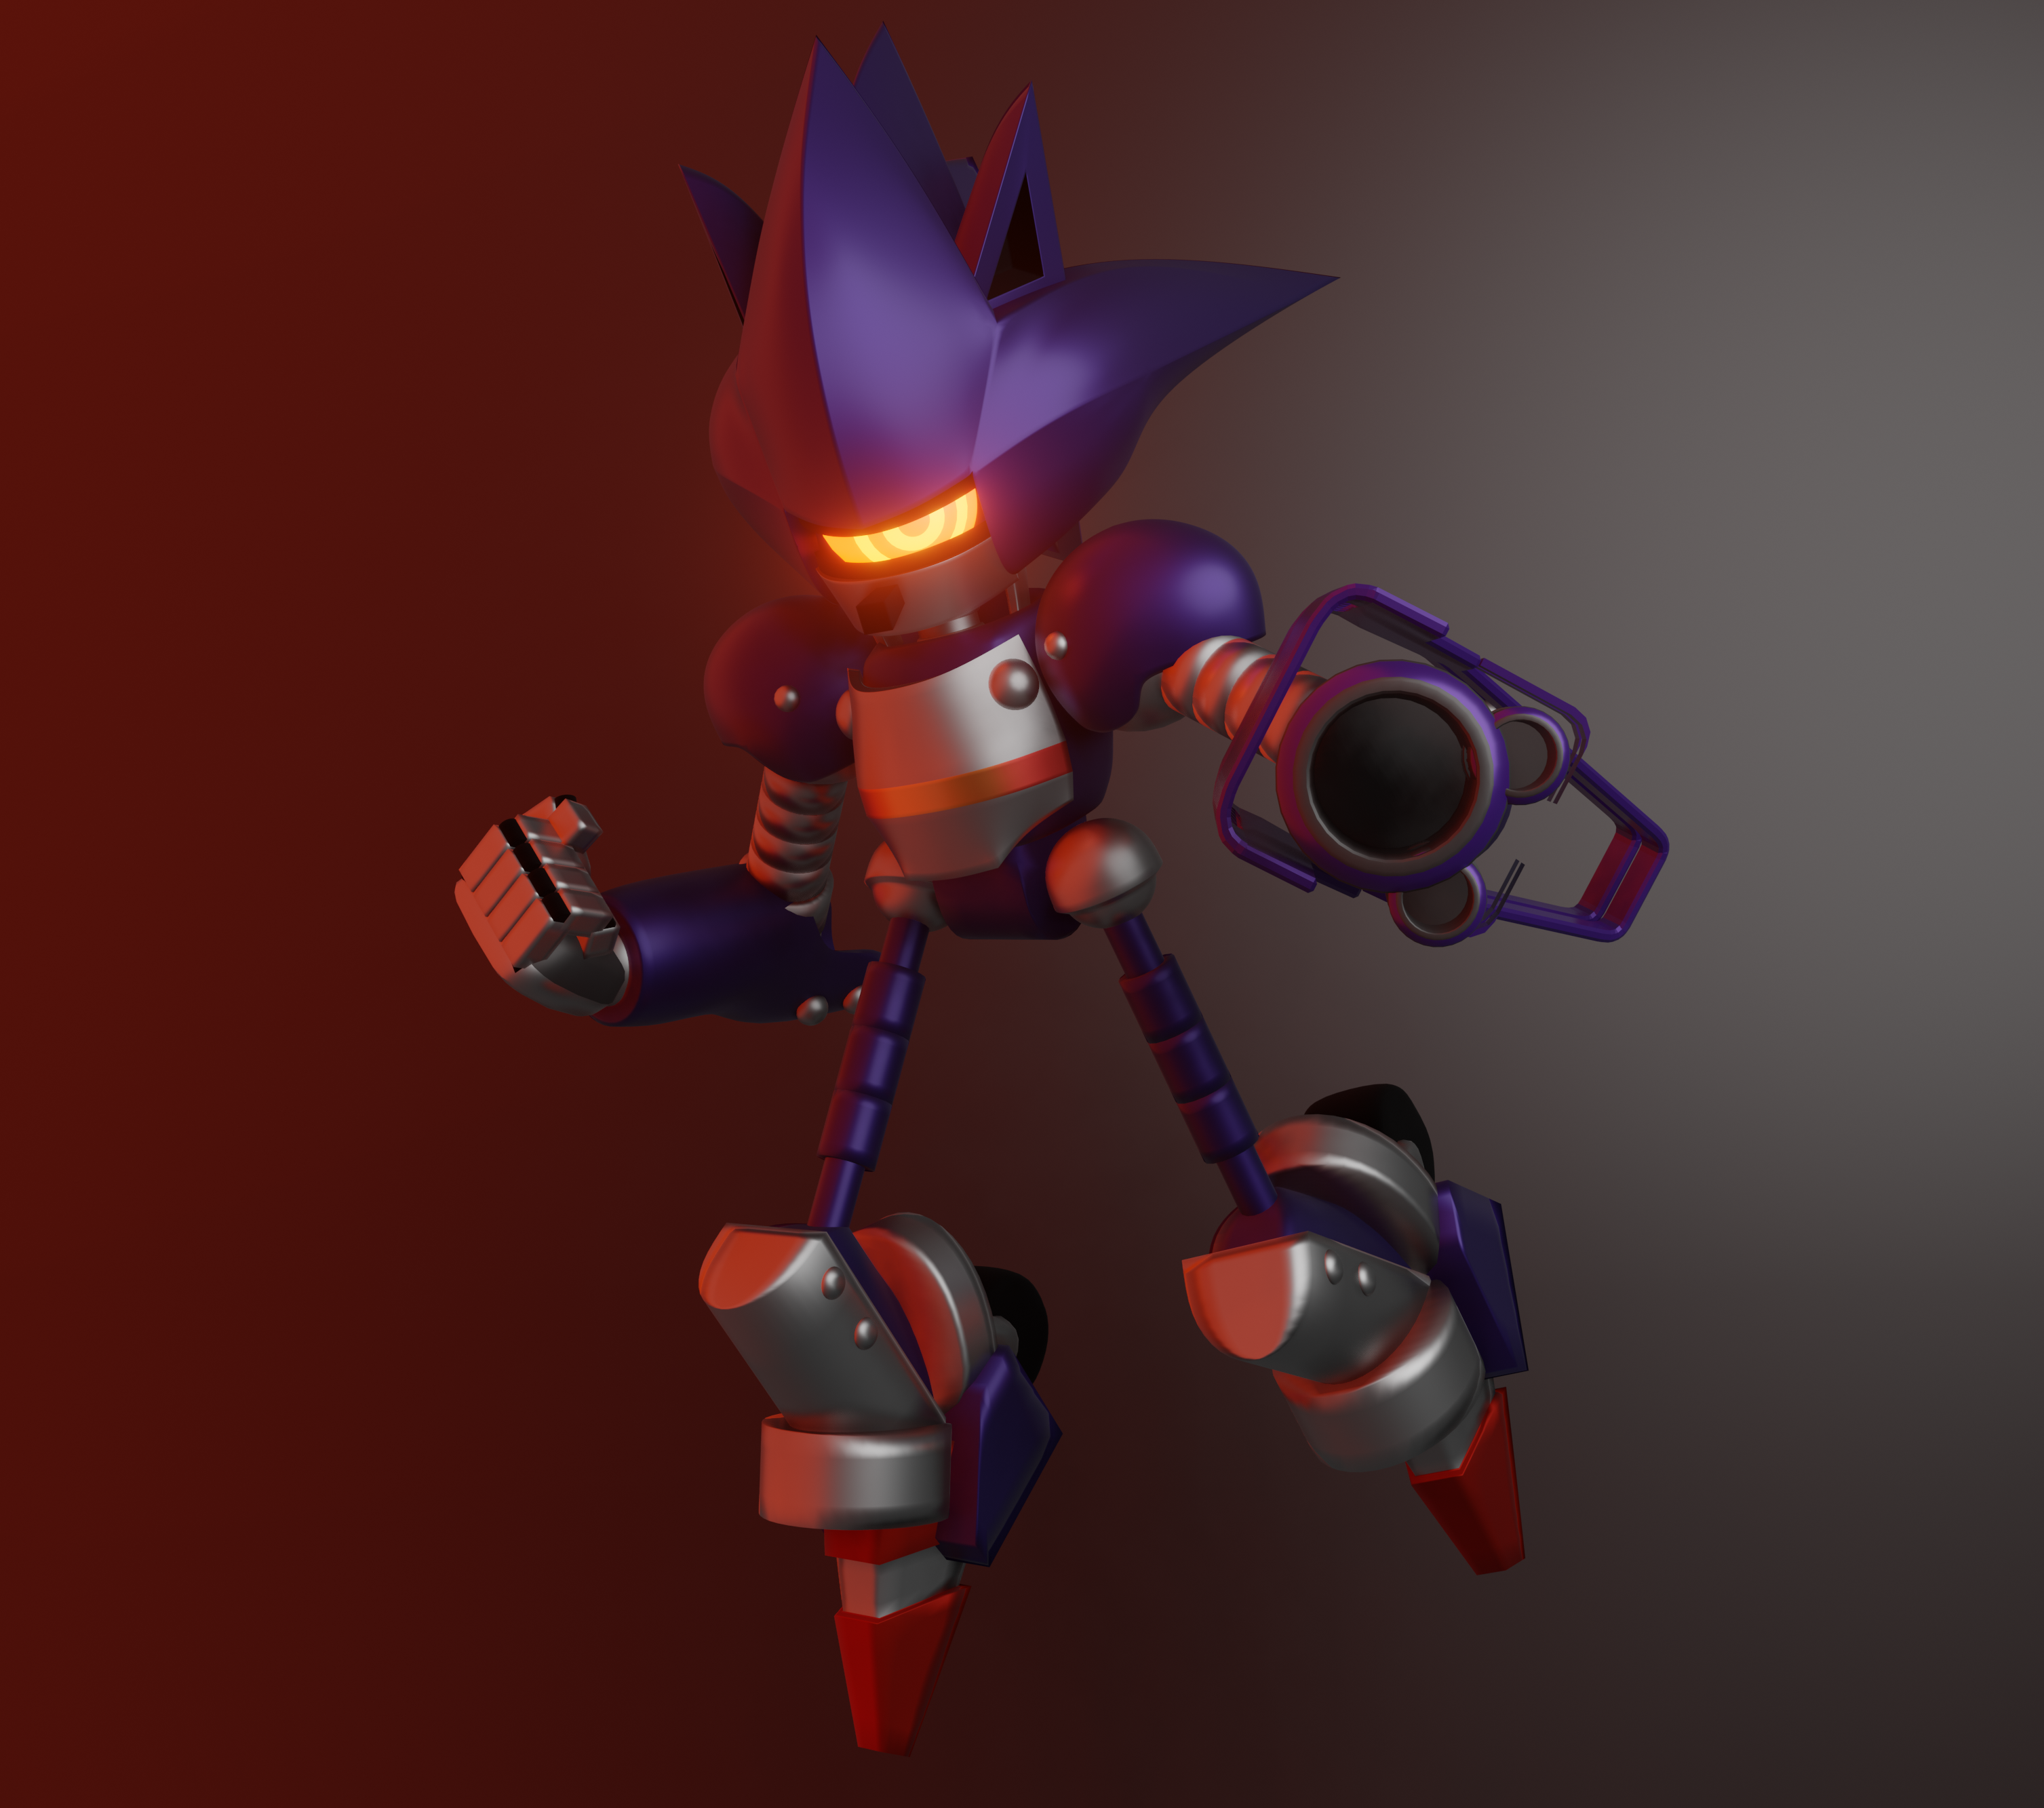 Mecha Sonic Mk. 1 by TJtheredgator on DeviantArt